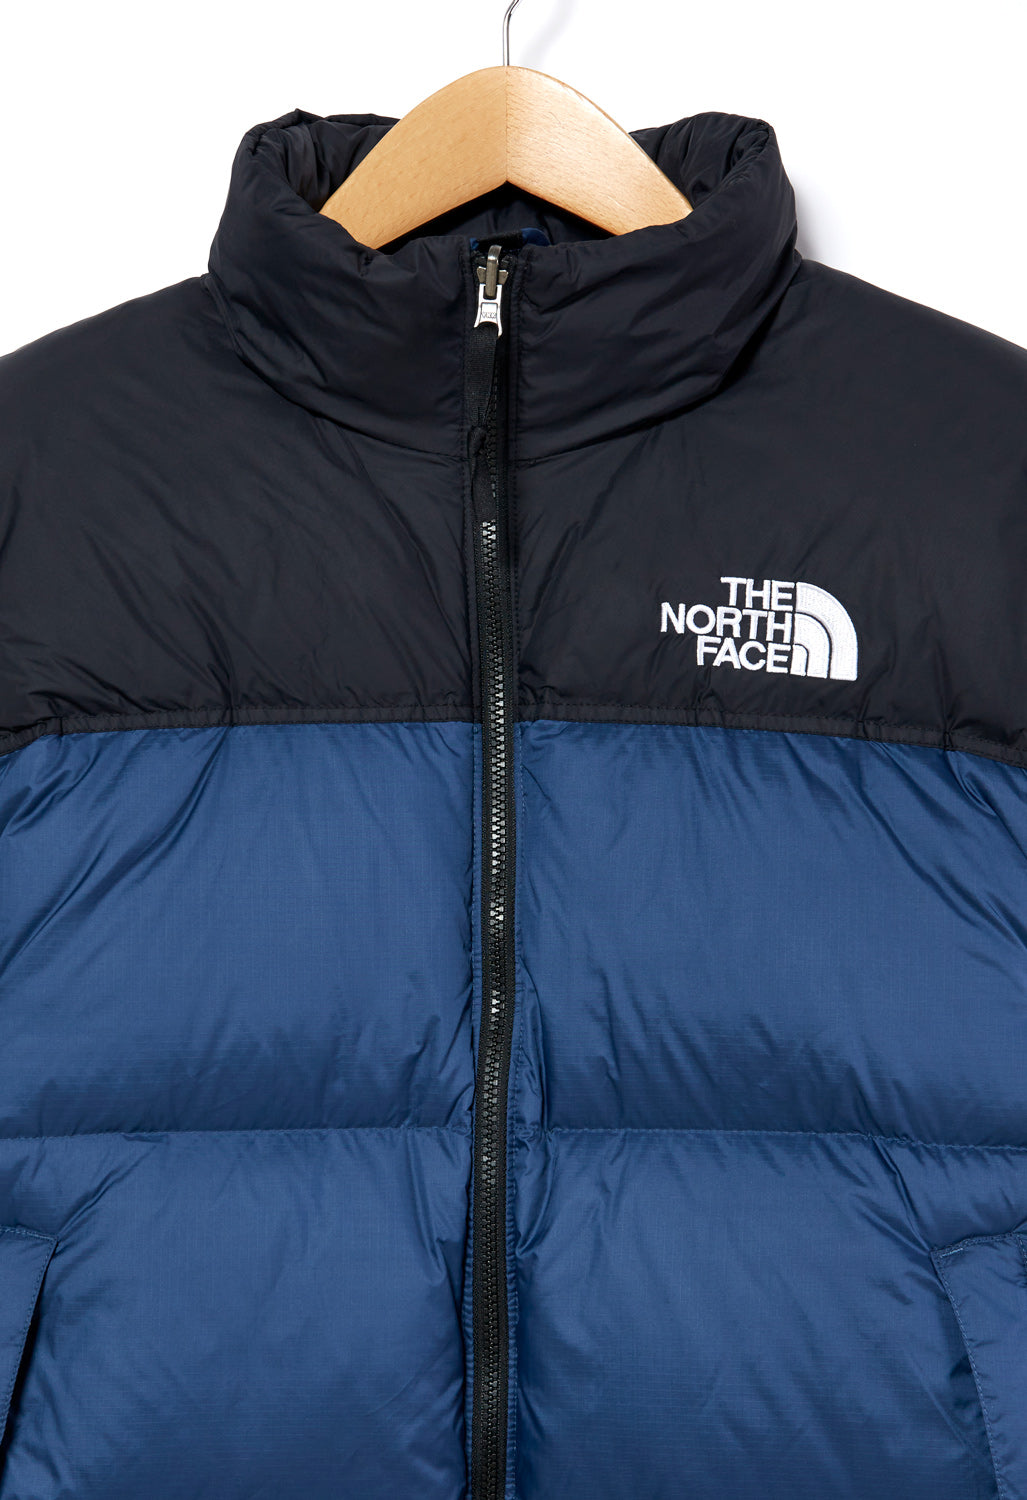 The North Face 1996 Retro Nuptse Men's Jacket - Shady Blue